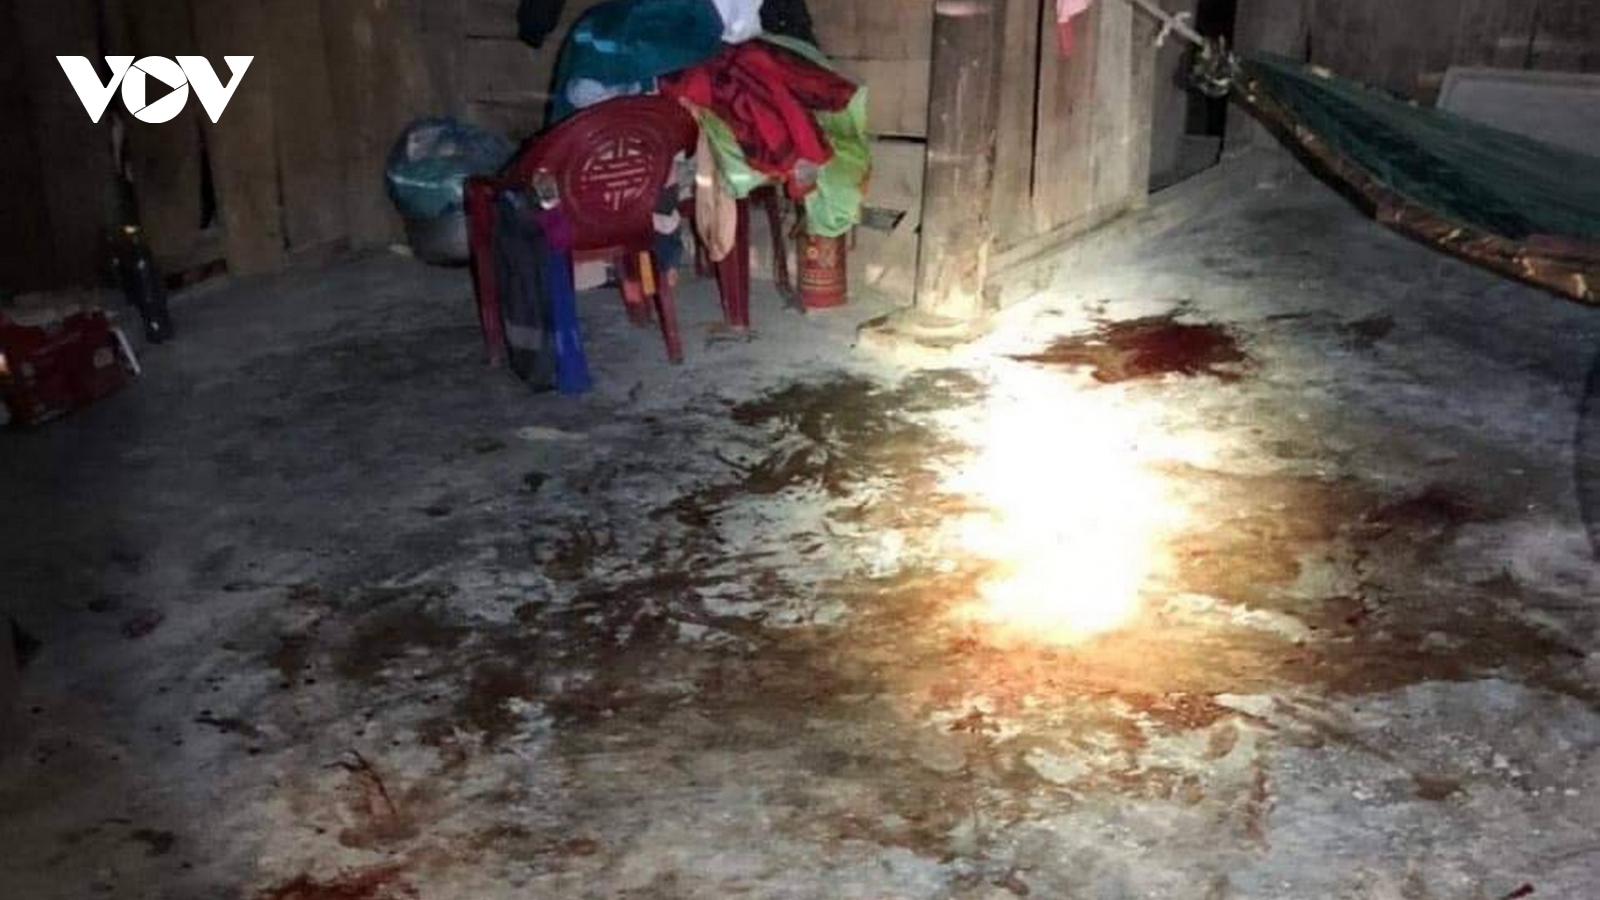 Mâu thuẫn gia đình, chồng chém vợ bị thương nặng ở Quảng Bình